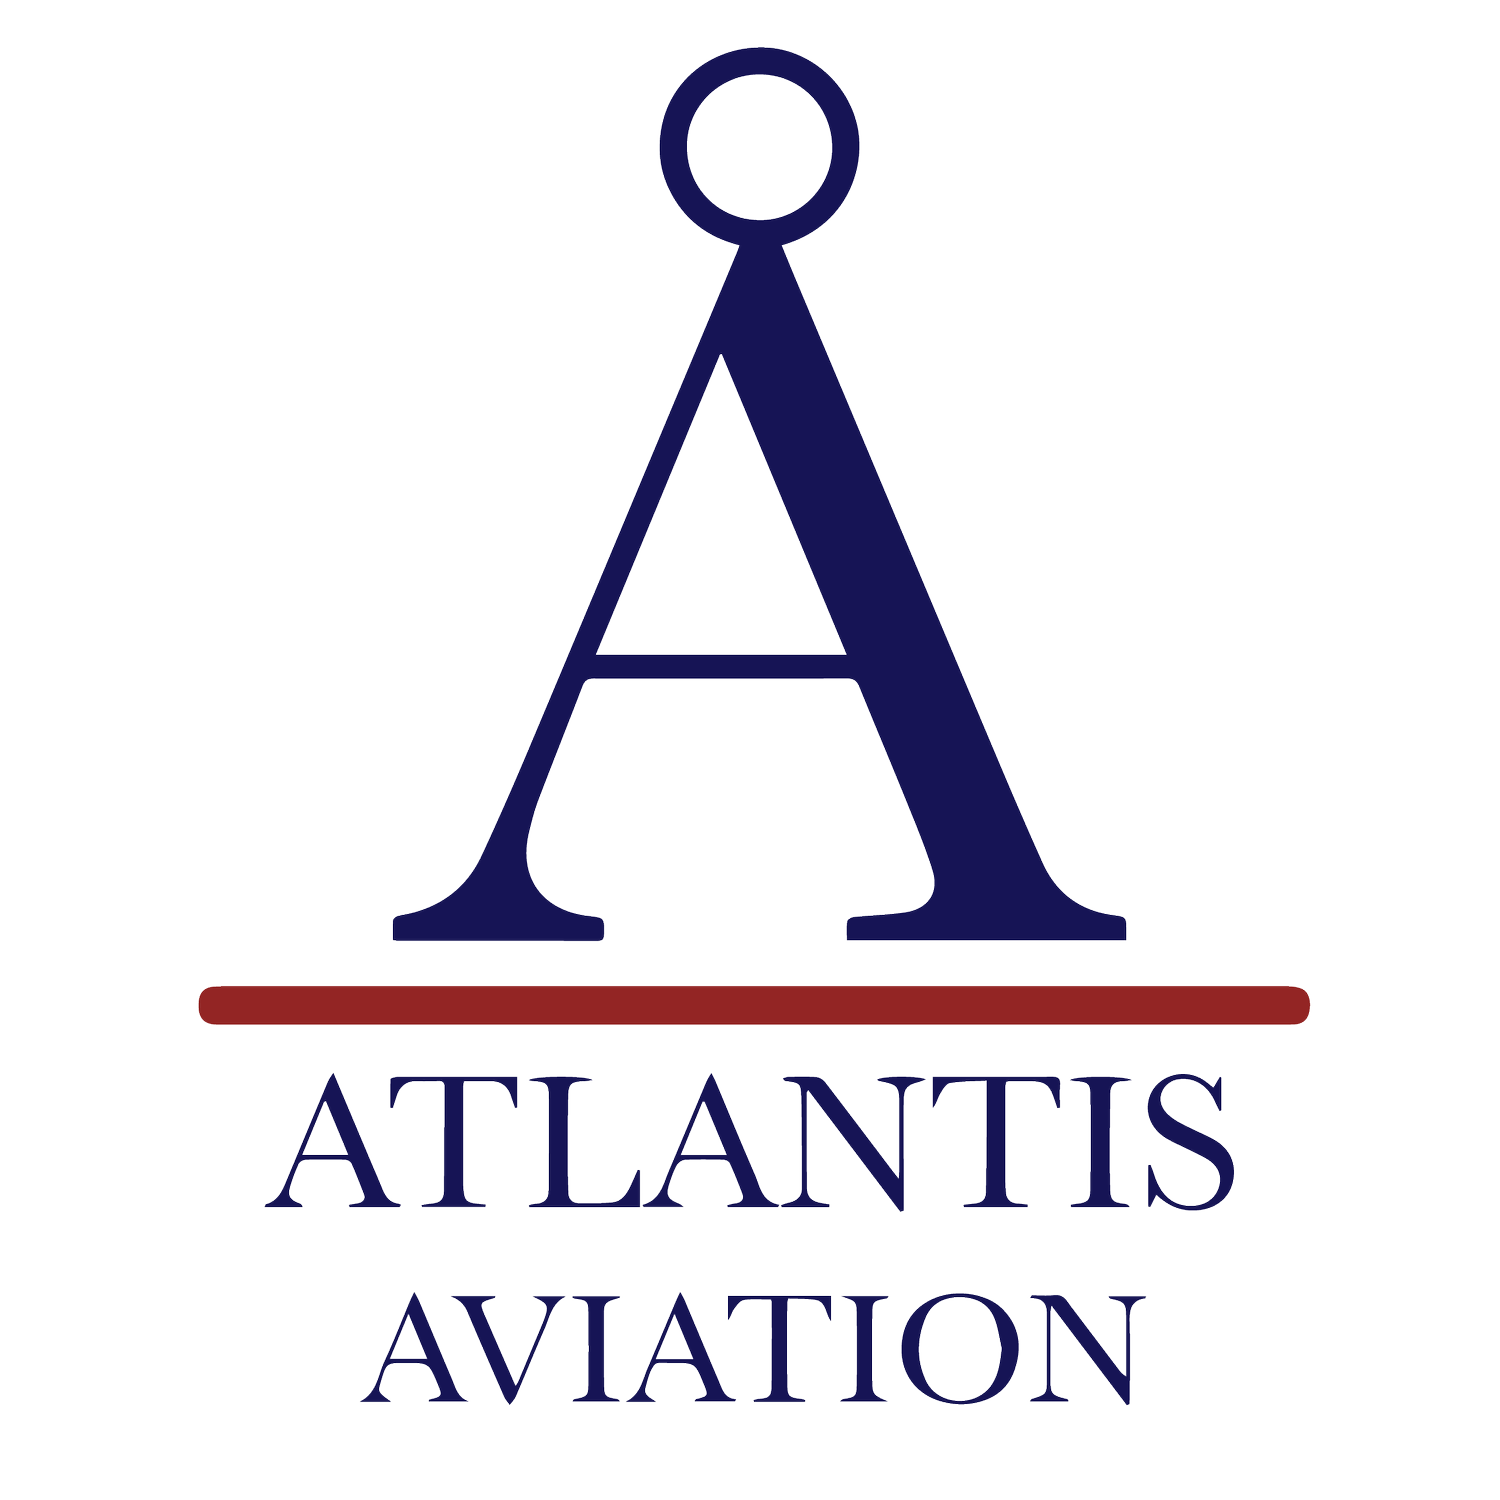 Global Atlantis